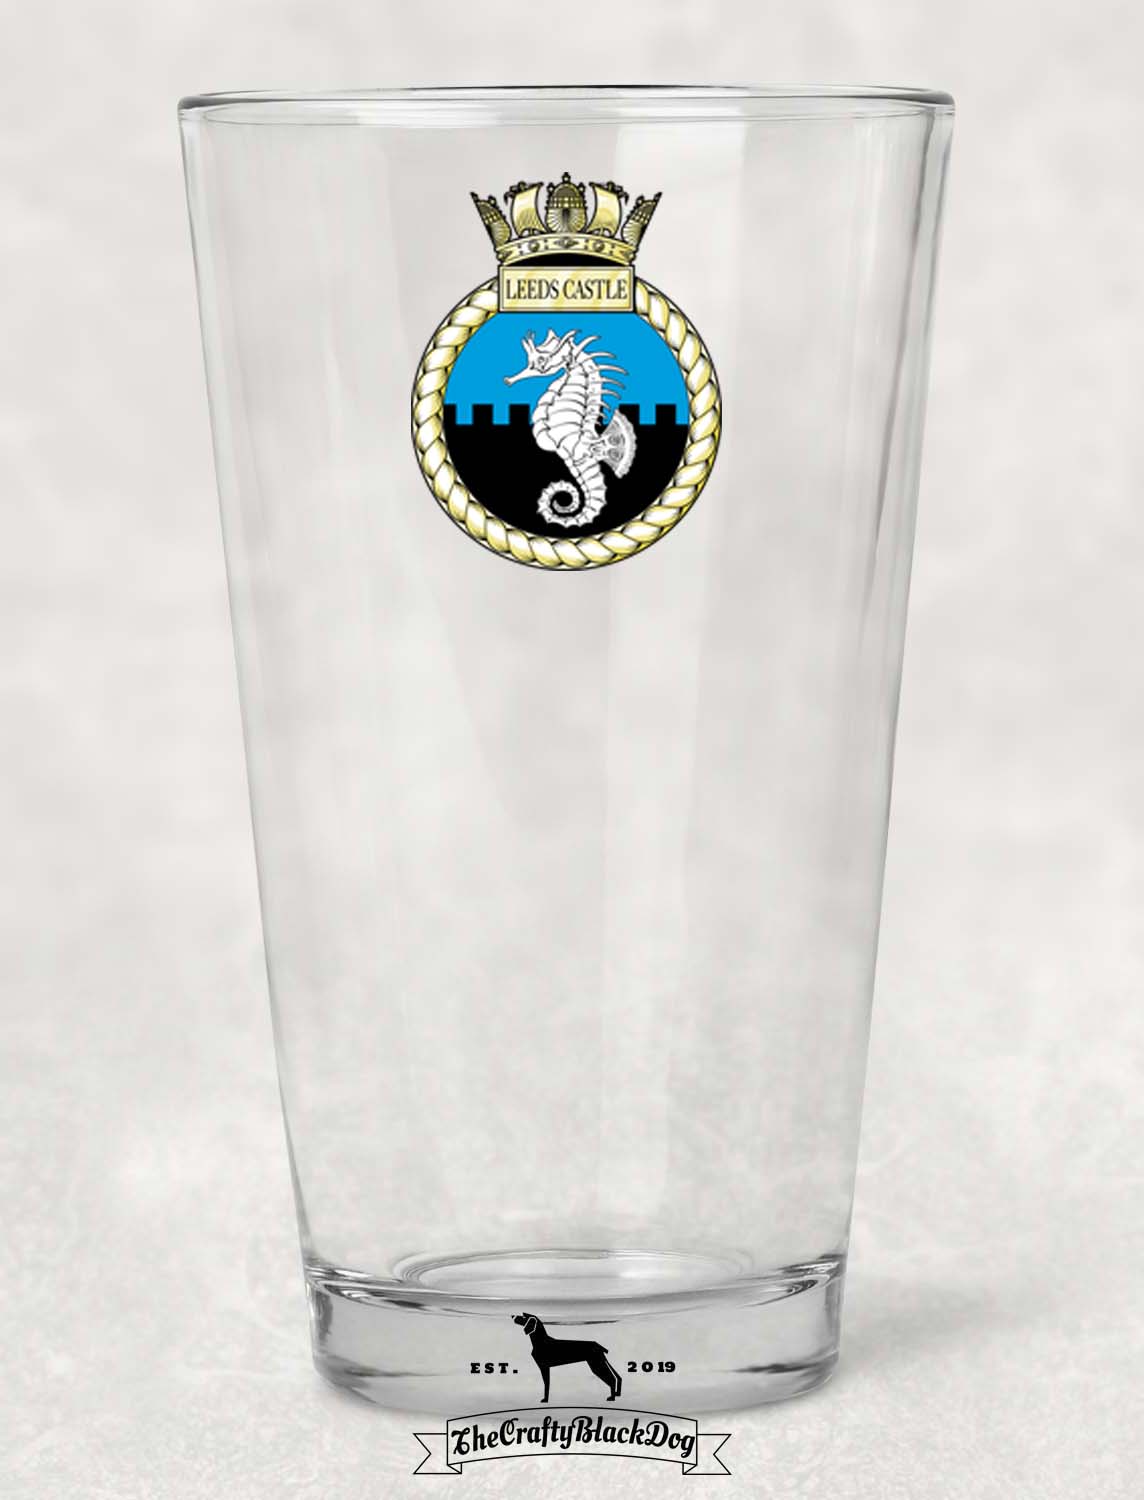 HMS Leeds Castle - Pint Glass